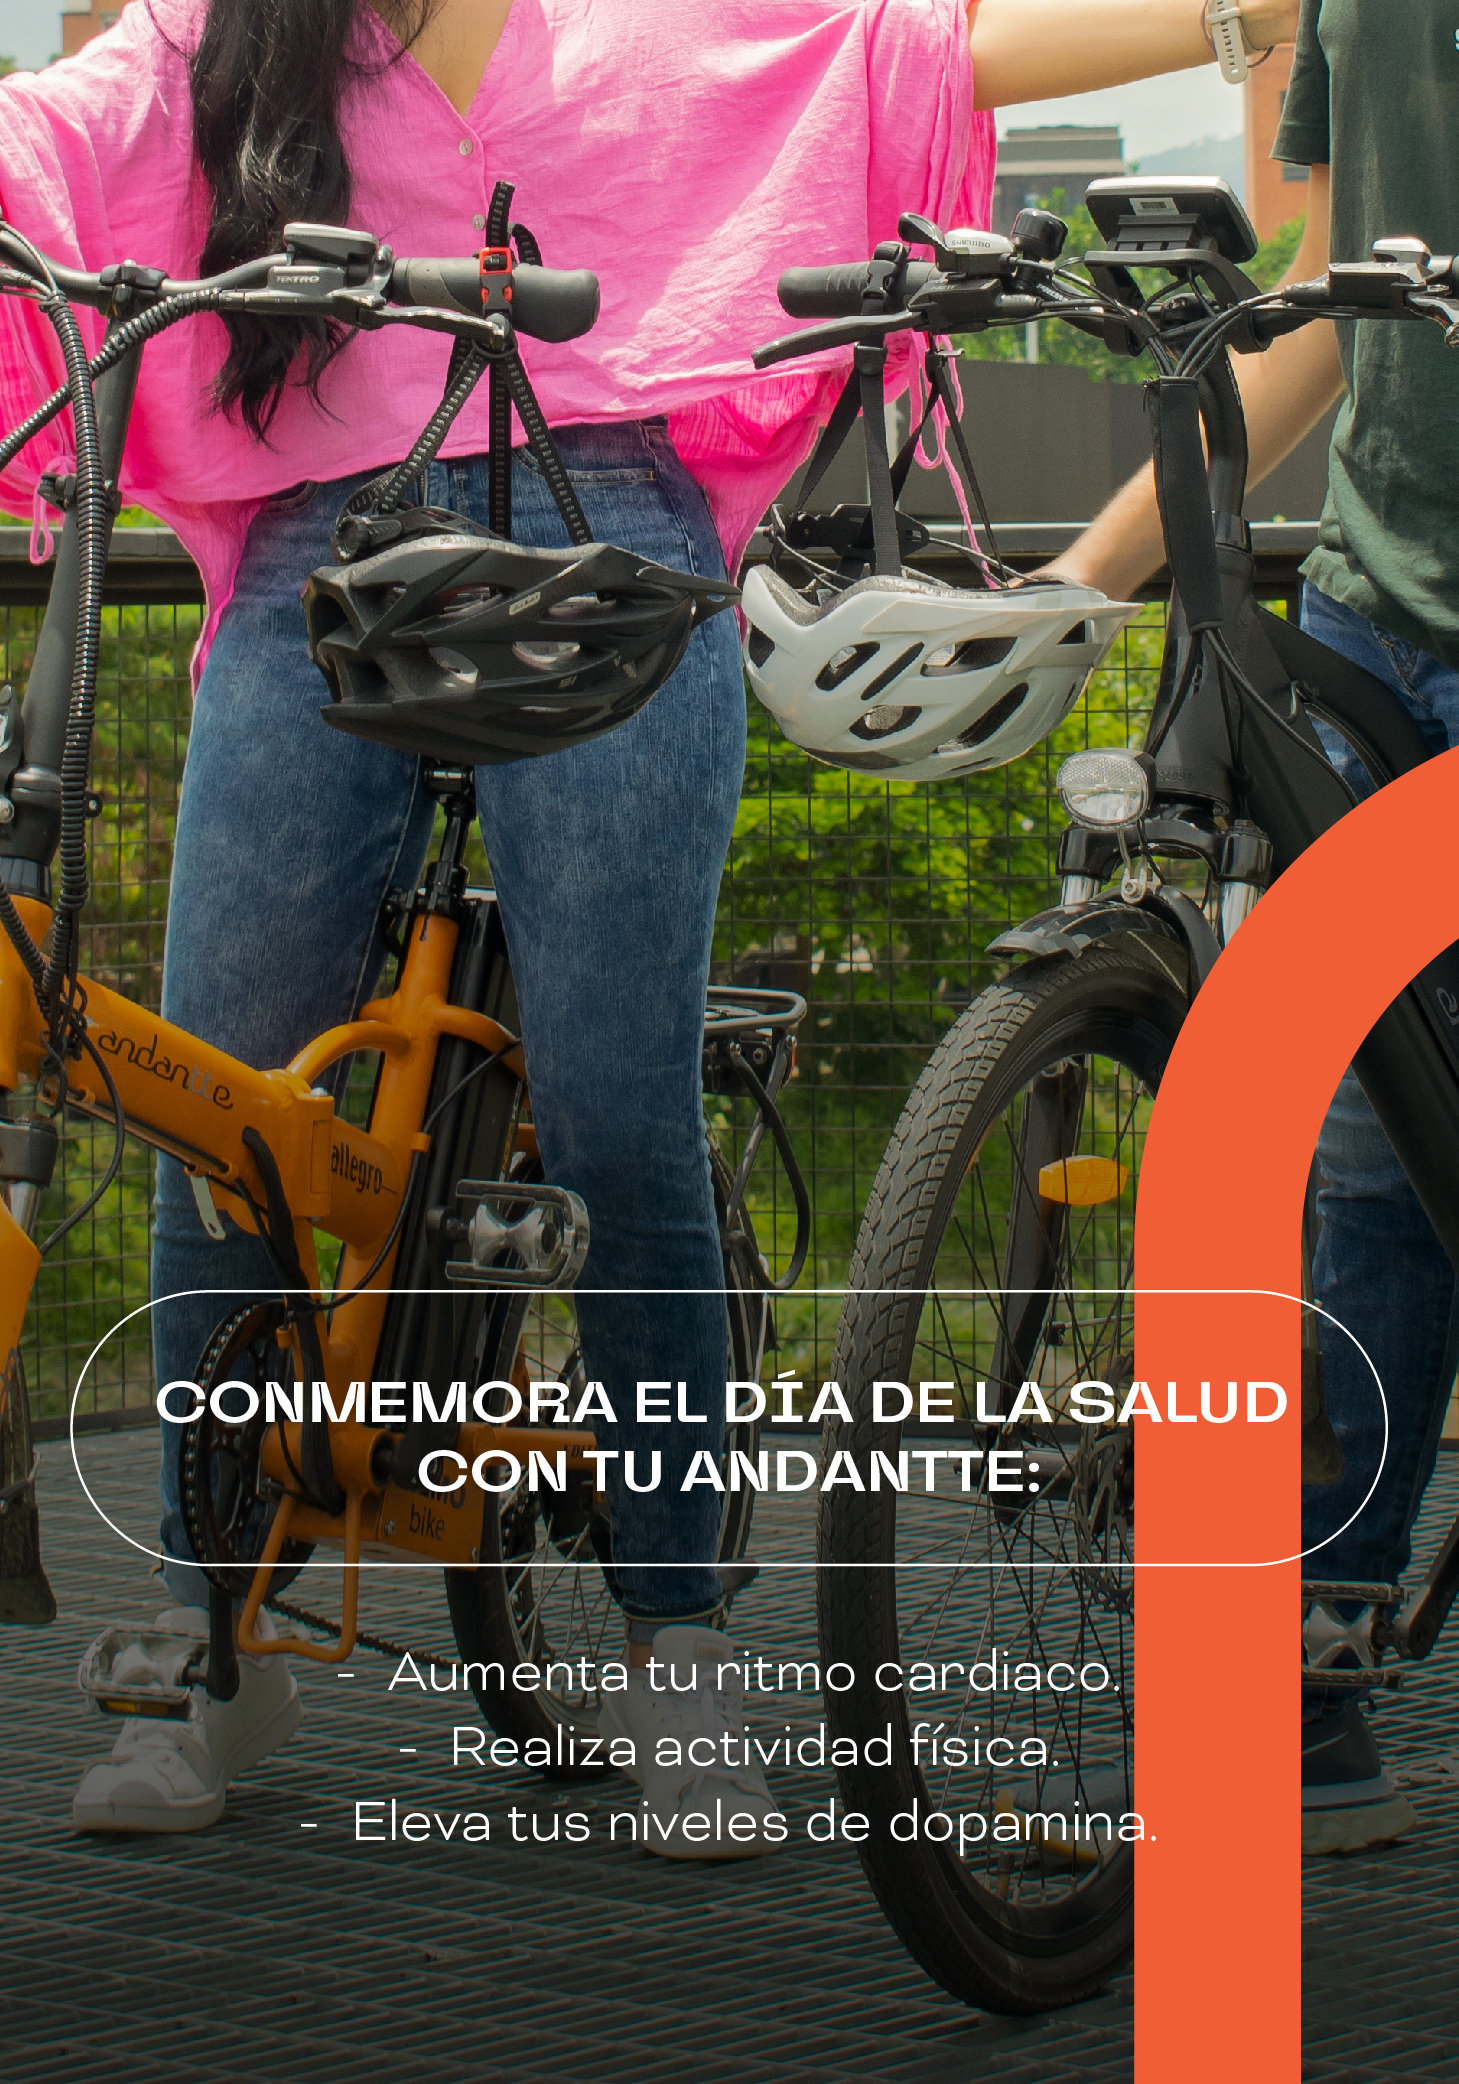 Bicicletas y día de la salud, bicicletas eléctricas. andantte, las mejores bicicletas de colombia